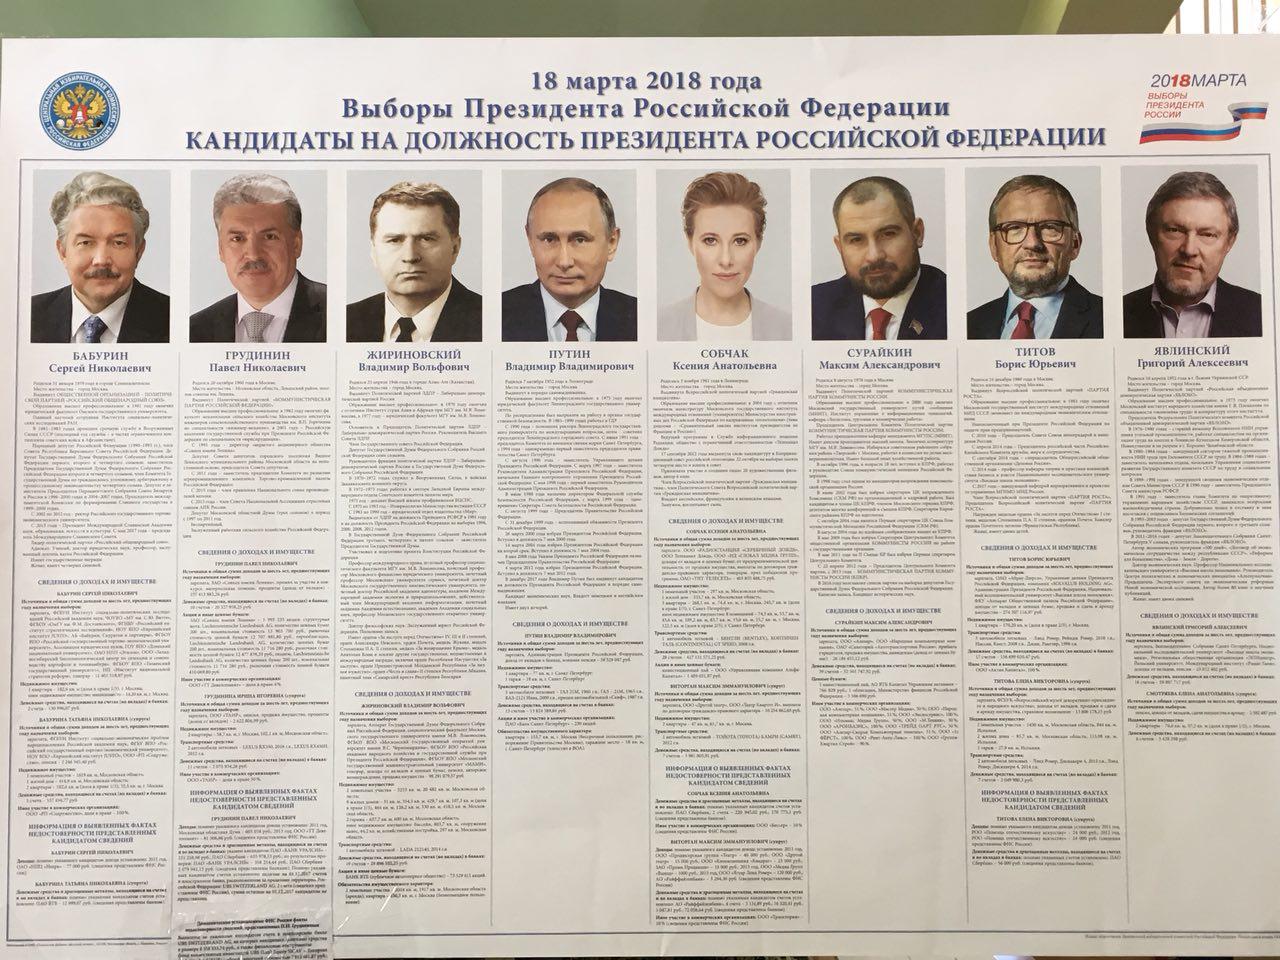 Когда будут оглашены результаты выборов президента. Президентские выборы в России 2012 кандидаты.